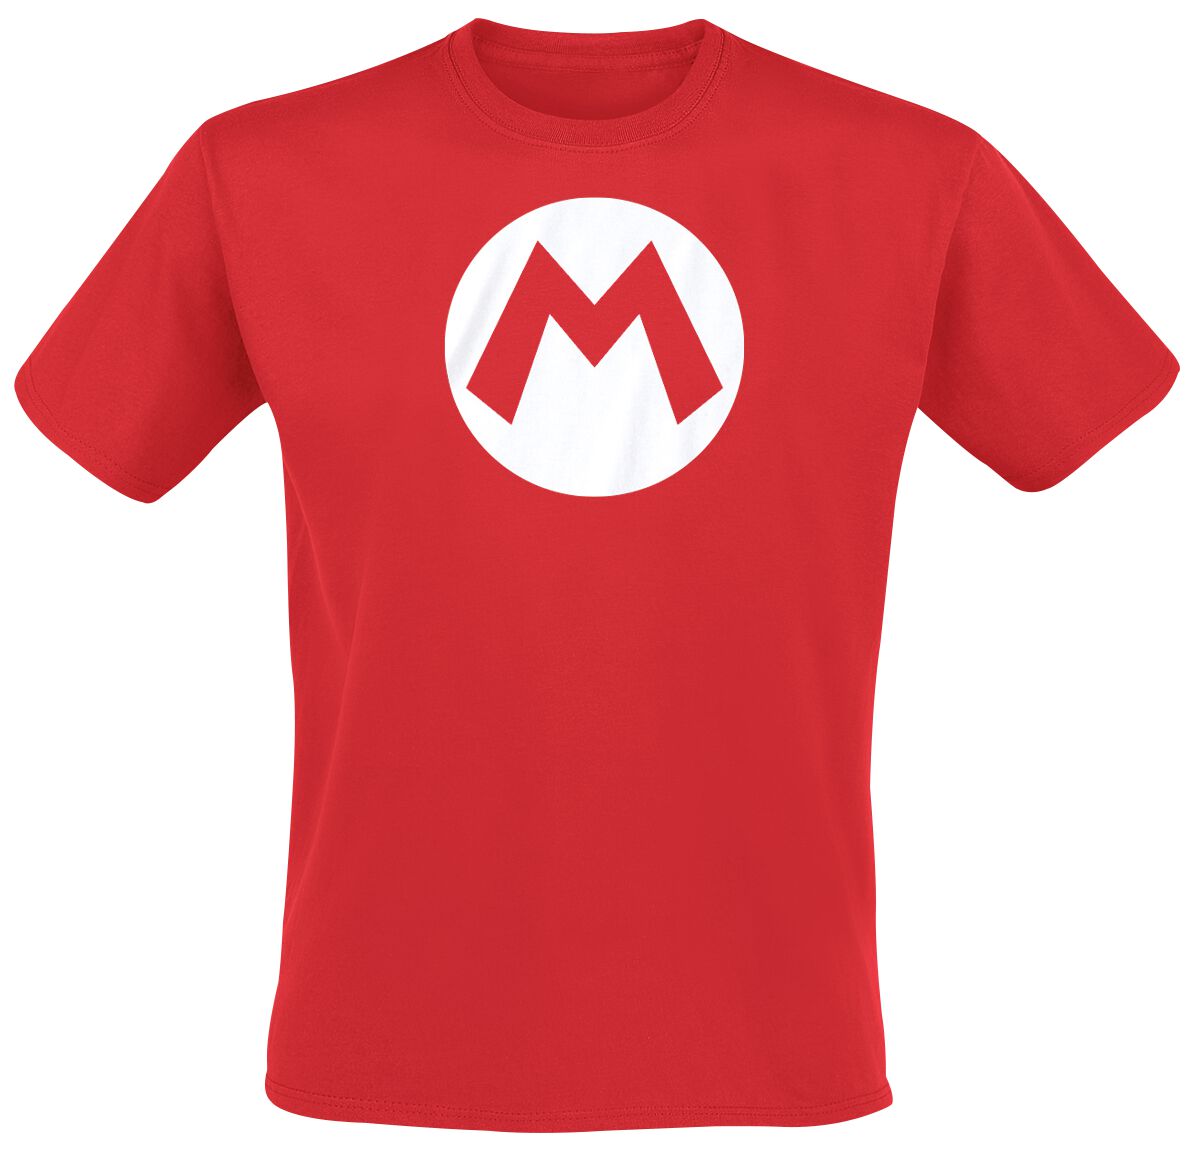 Super Mario Mario badge T-Shirt red